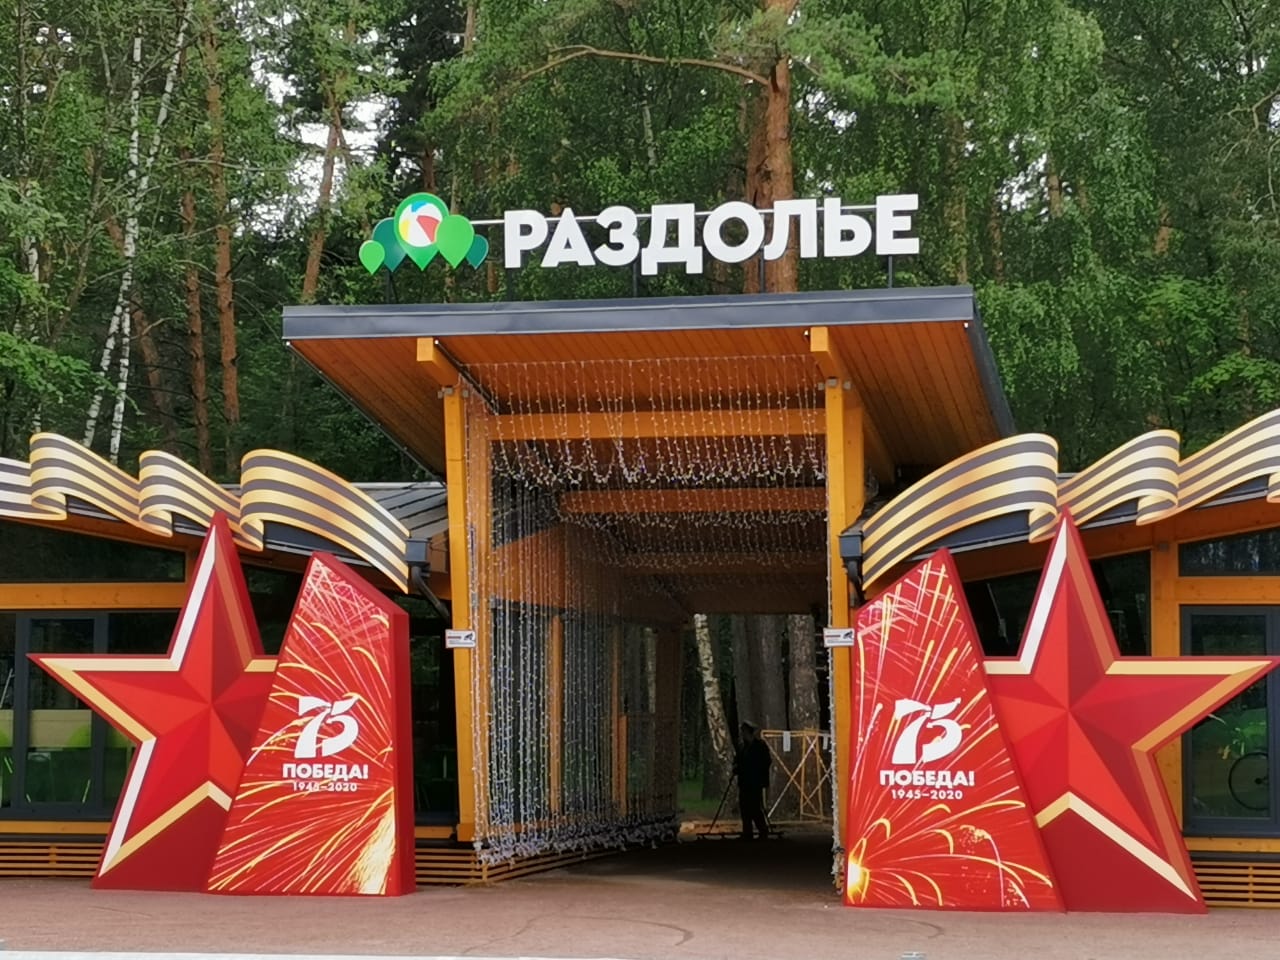 Парк Раздолье, Москва, 2020 г.